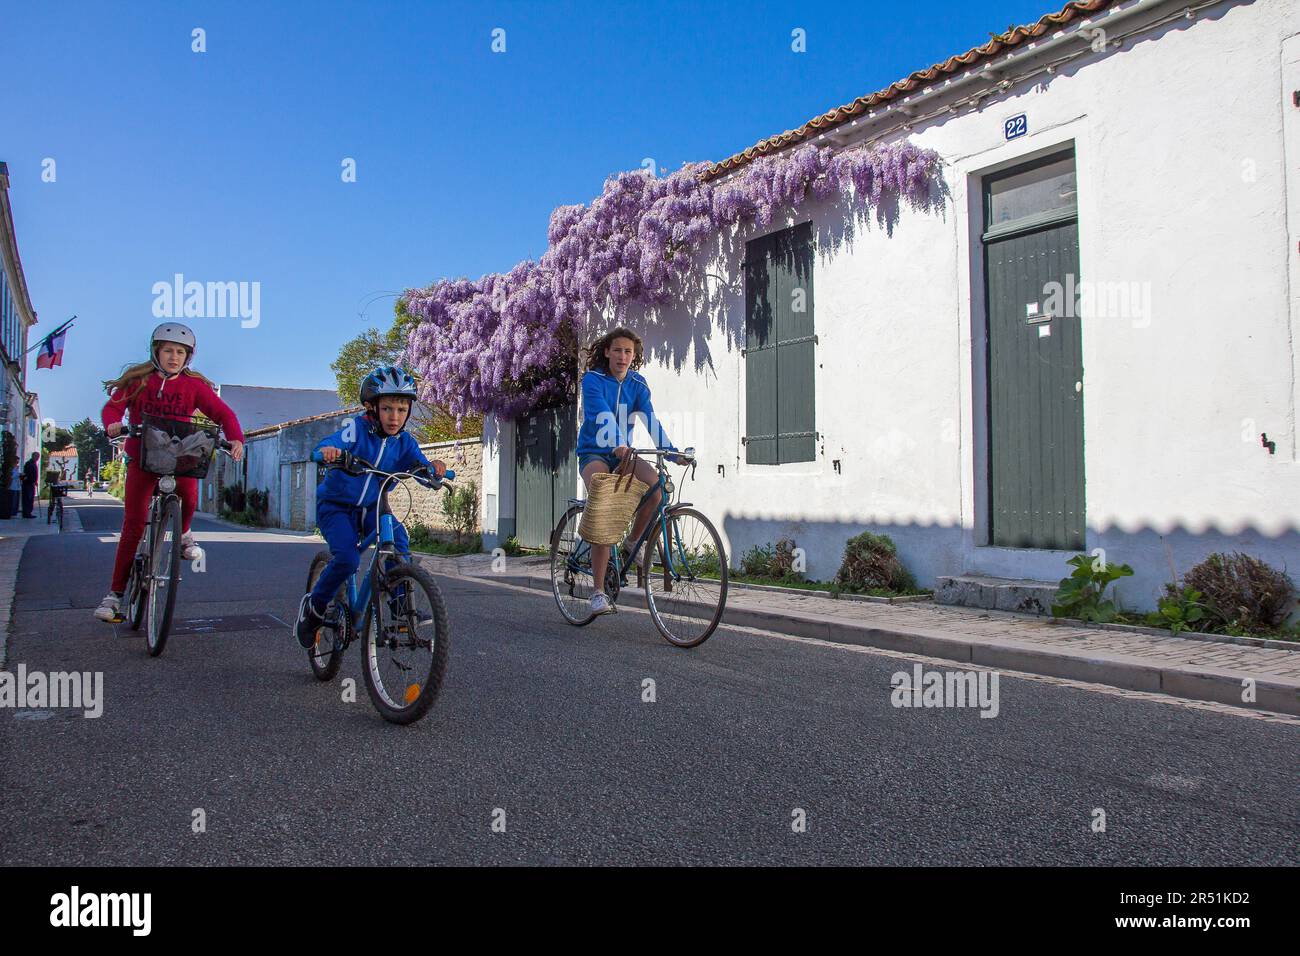 Cyclistes dans les rues des portes en ré, Ile de Ré, Frankreich Stockfoto